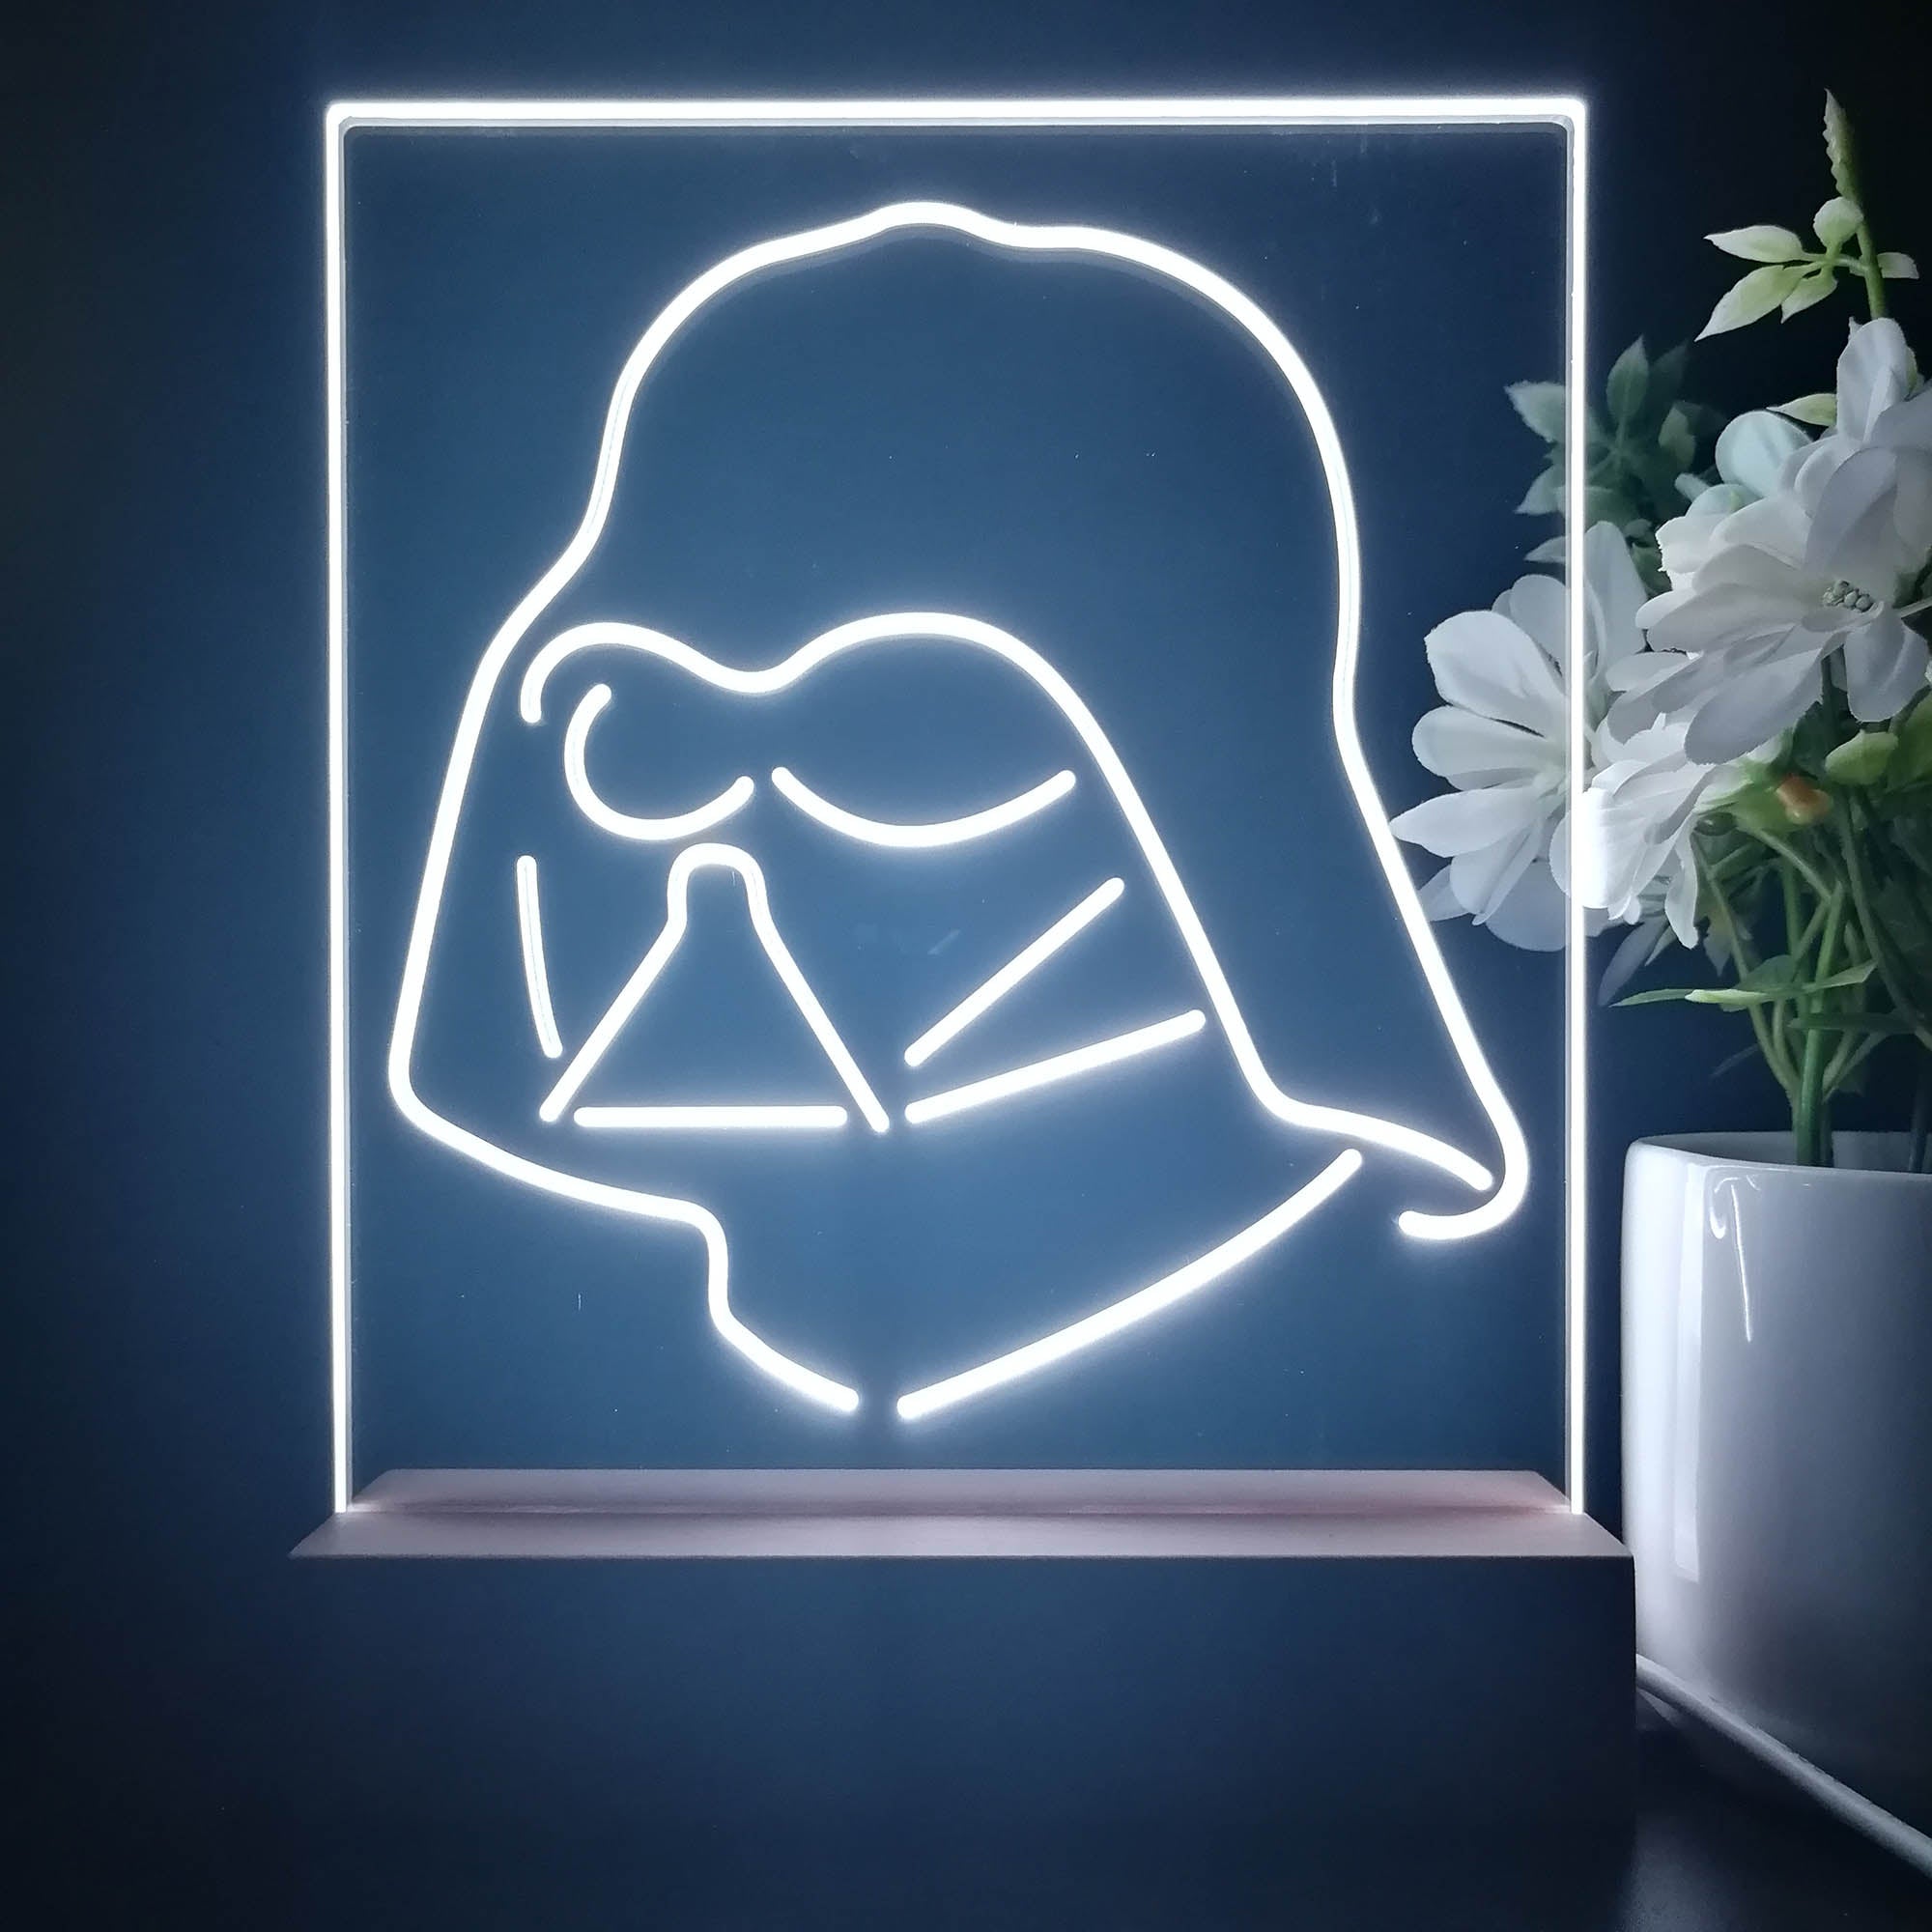 Stars Wars Darth Vader Sith Dark 3D Illusion Night Light Desk Lamp